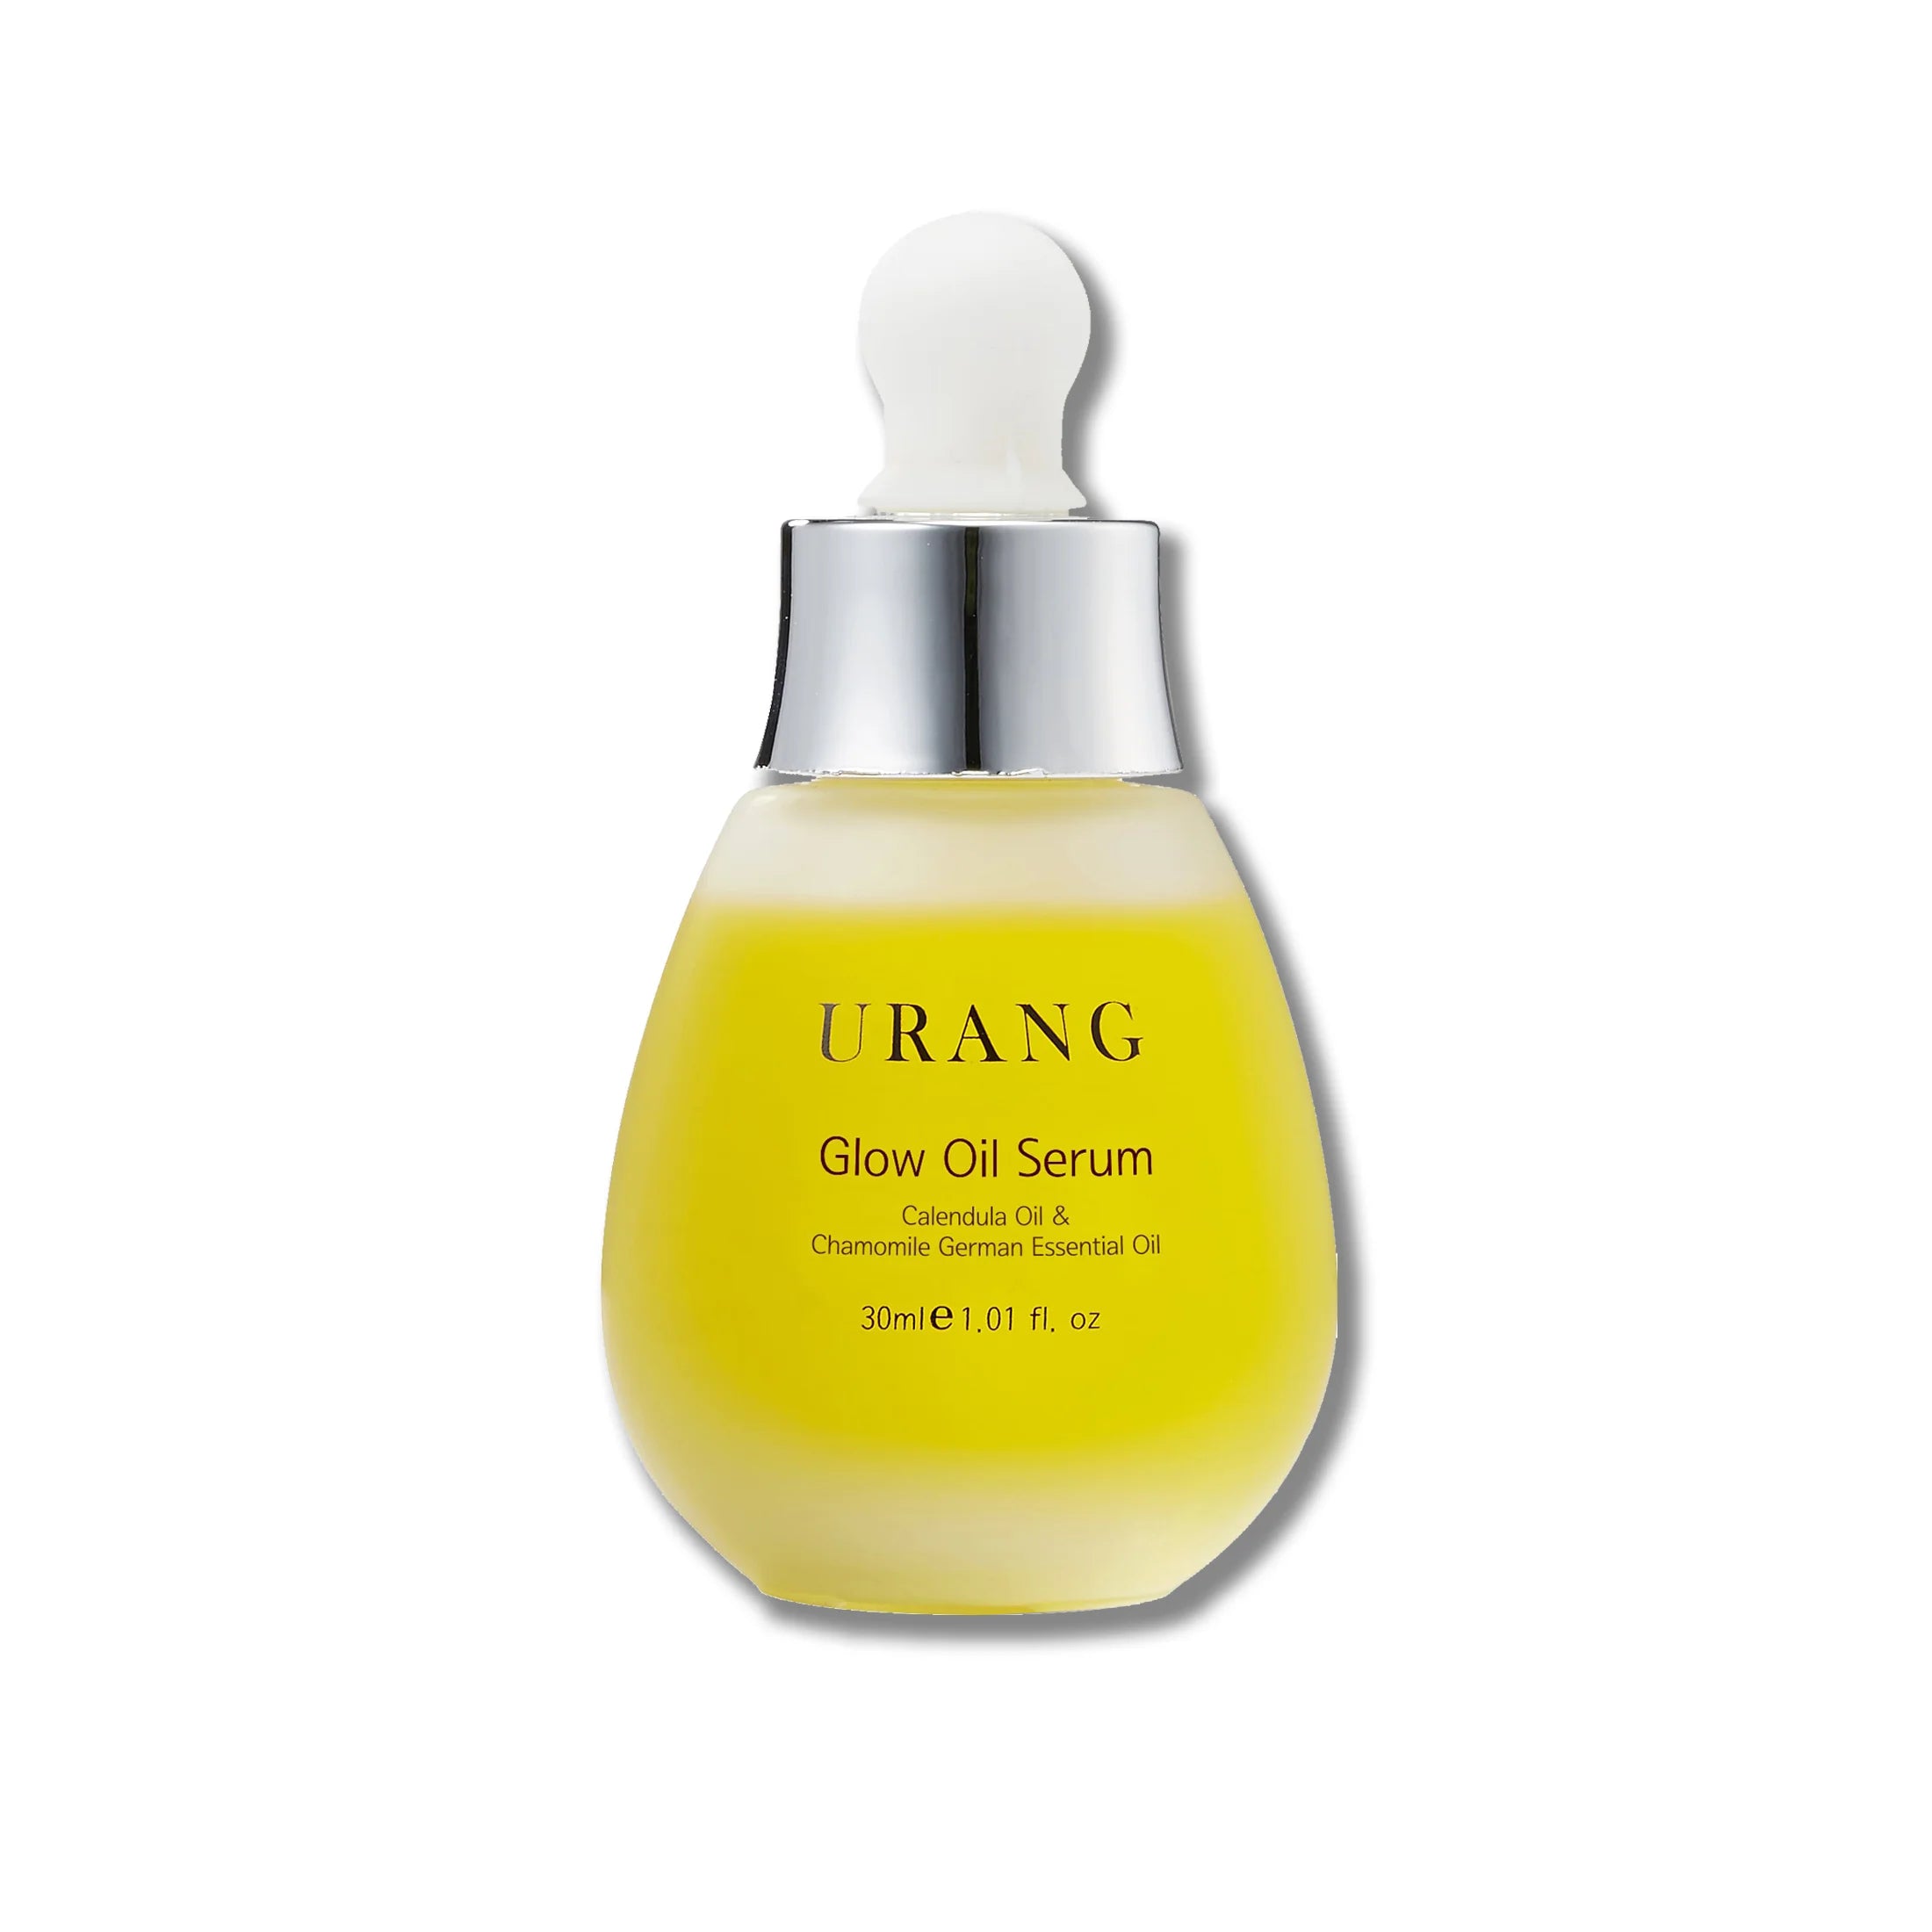 Urang Glow Oil Serum vitamin C ampoule anti-aging natural face care vegan Korean cosmetics K Beauty World